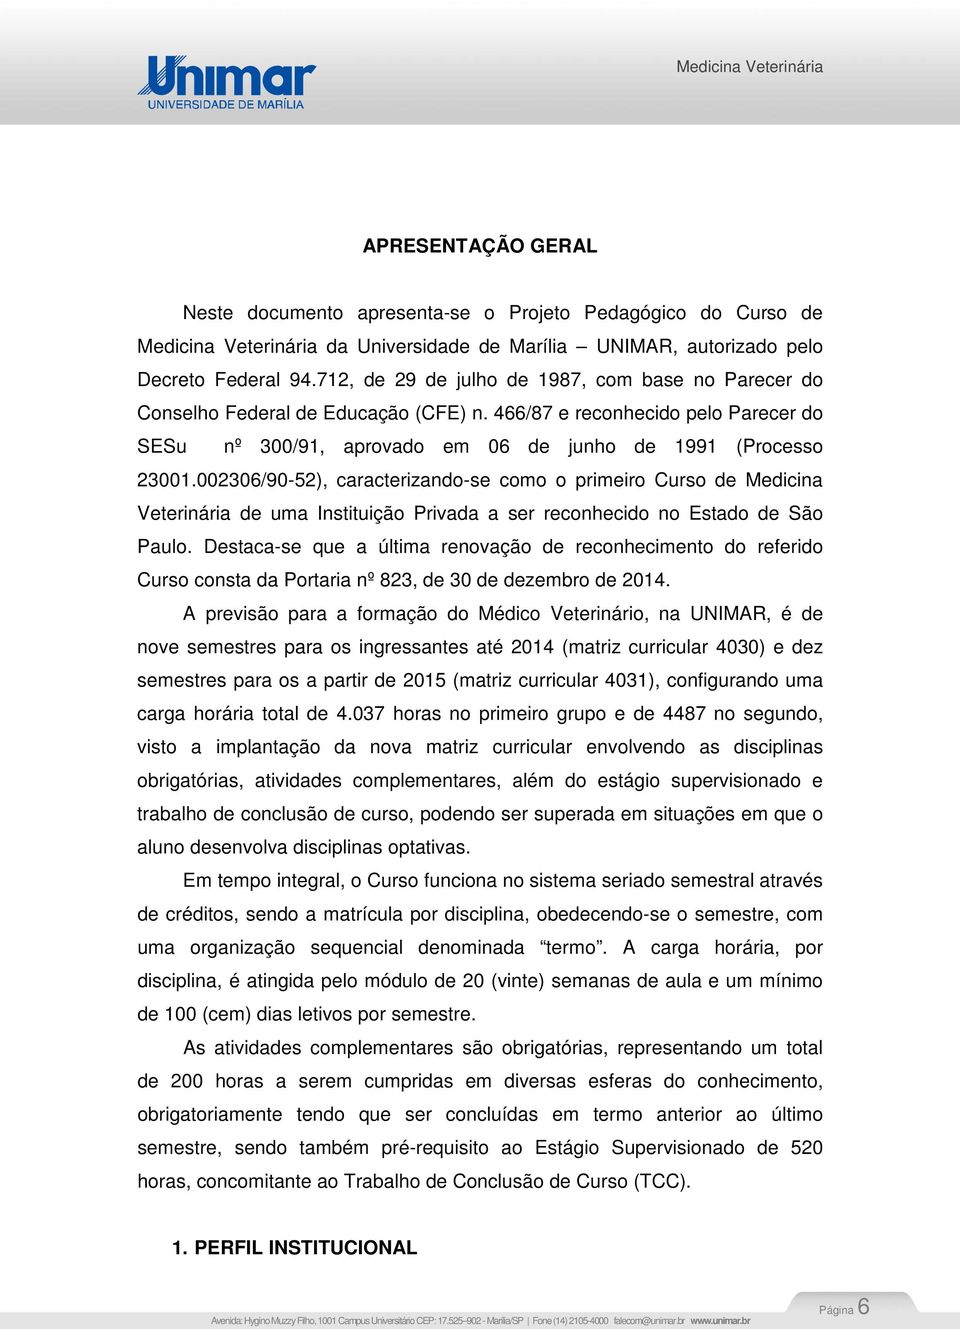 002306/90-52), caracterizando-se como o primeiro Curso de Medicina Veterinária de uma Instituição Privada a ser reconhecido no Estado de São Paulo.